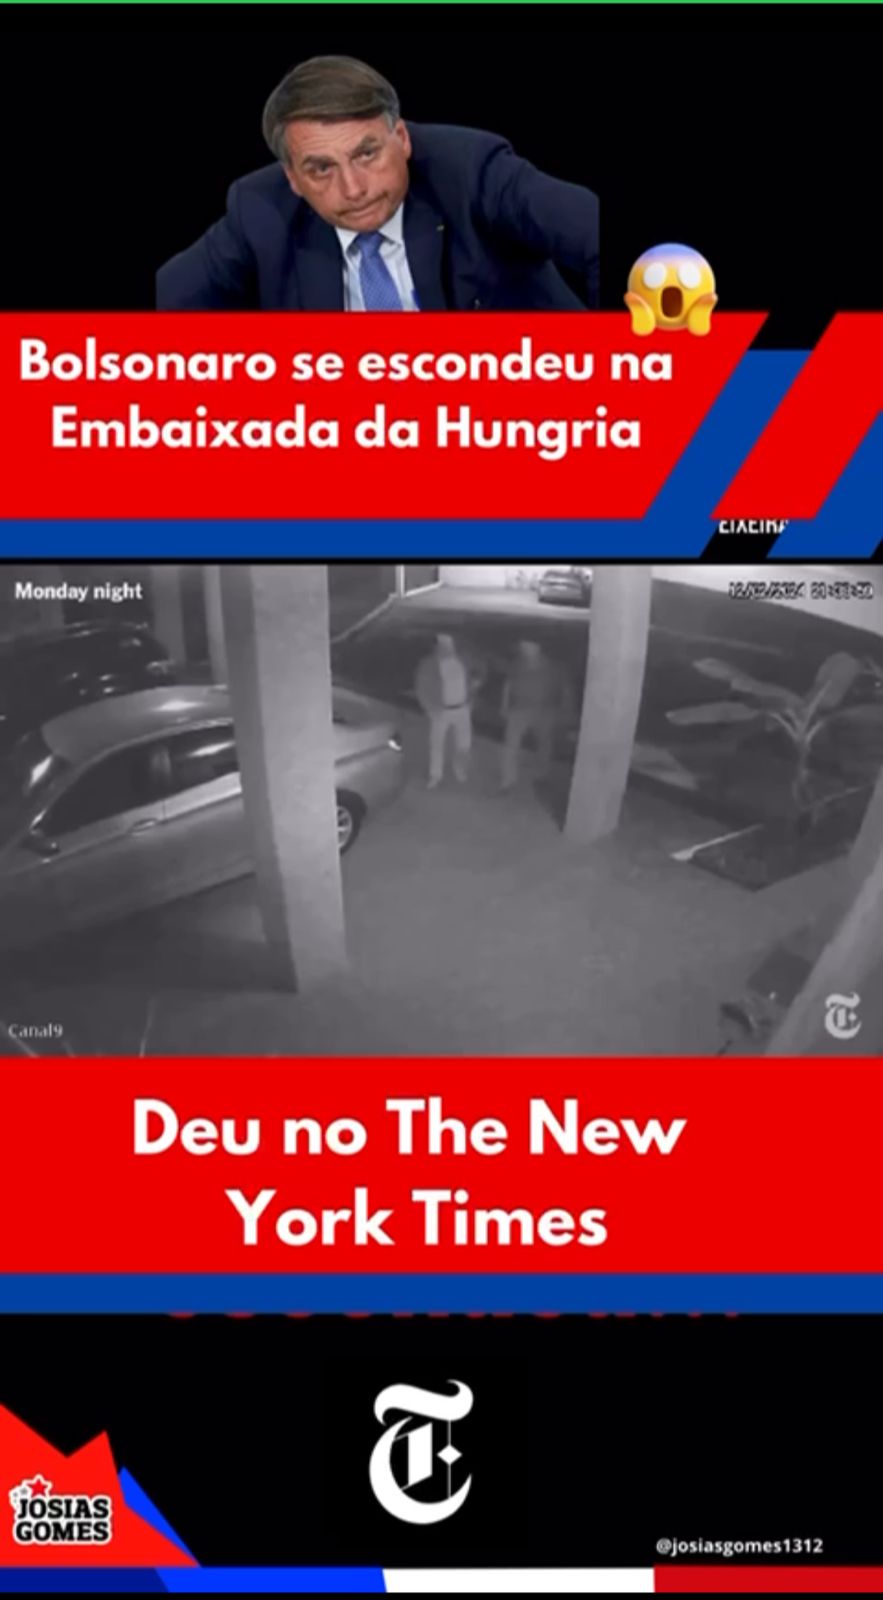 Bolsonaro Covardão Fugiu Para Embaixada Da Hungria